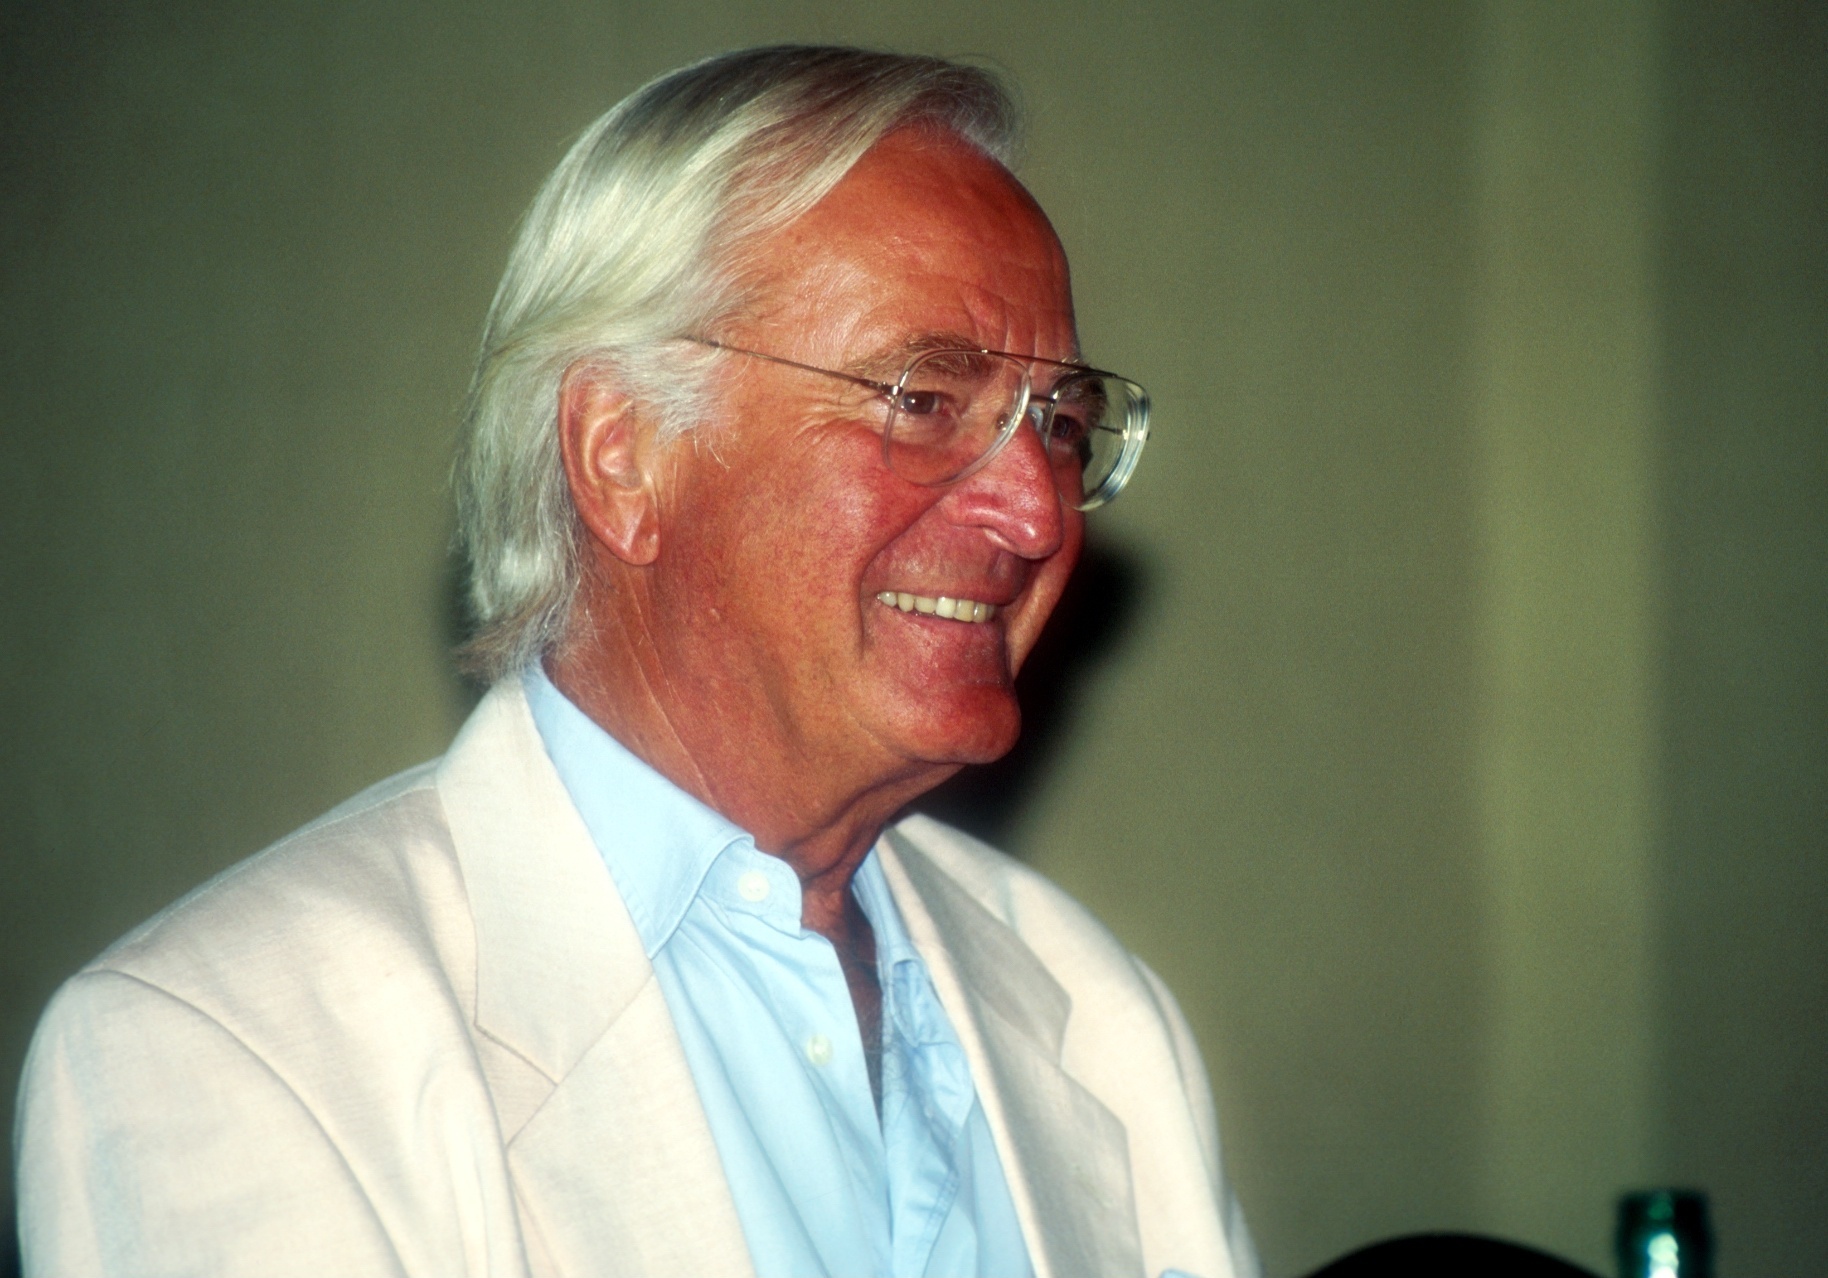 Der Komponist Martin Böttcher starb am 20. April 2019 mit 91 Jahren. Er komponierte die legendäre „Winnetou“-Titelmelodie sowie zahlreiche Soundtracks für Filme (z.B. mit Heinz Rühmann) und Serien („Der Alte, “Derrick“ u.v.a.).